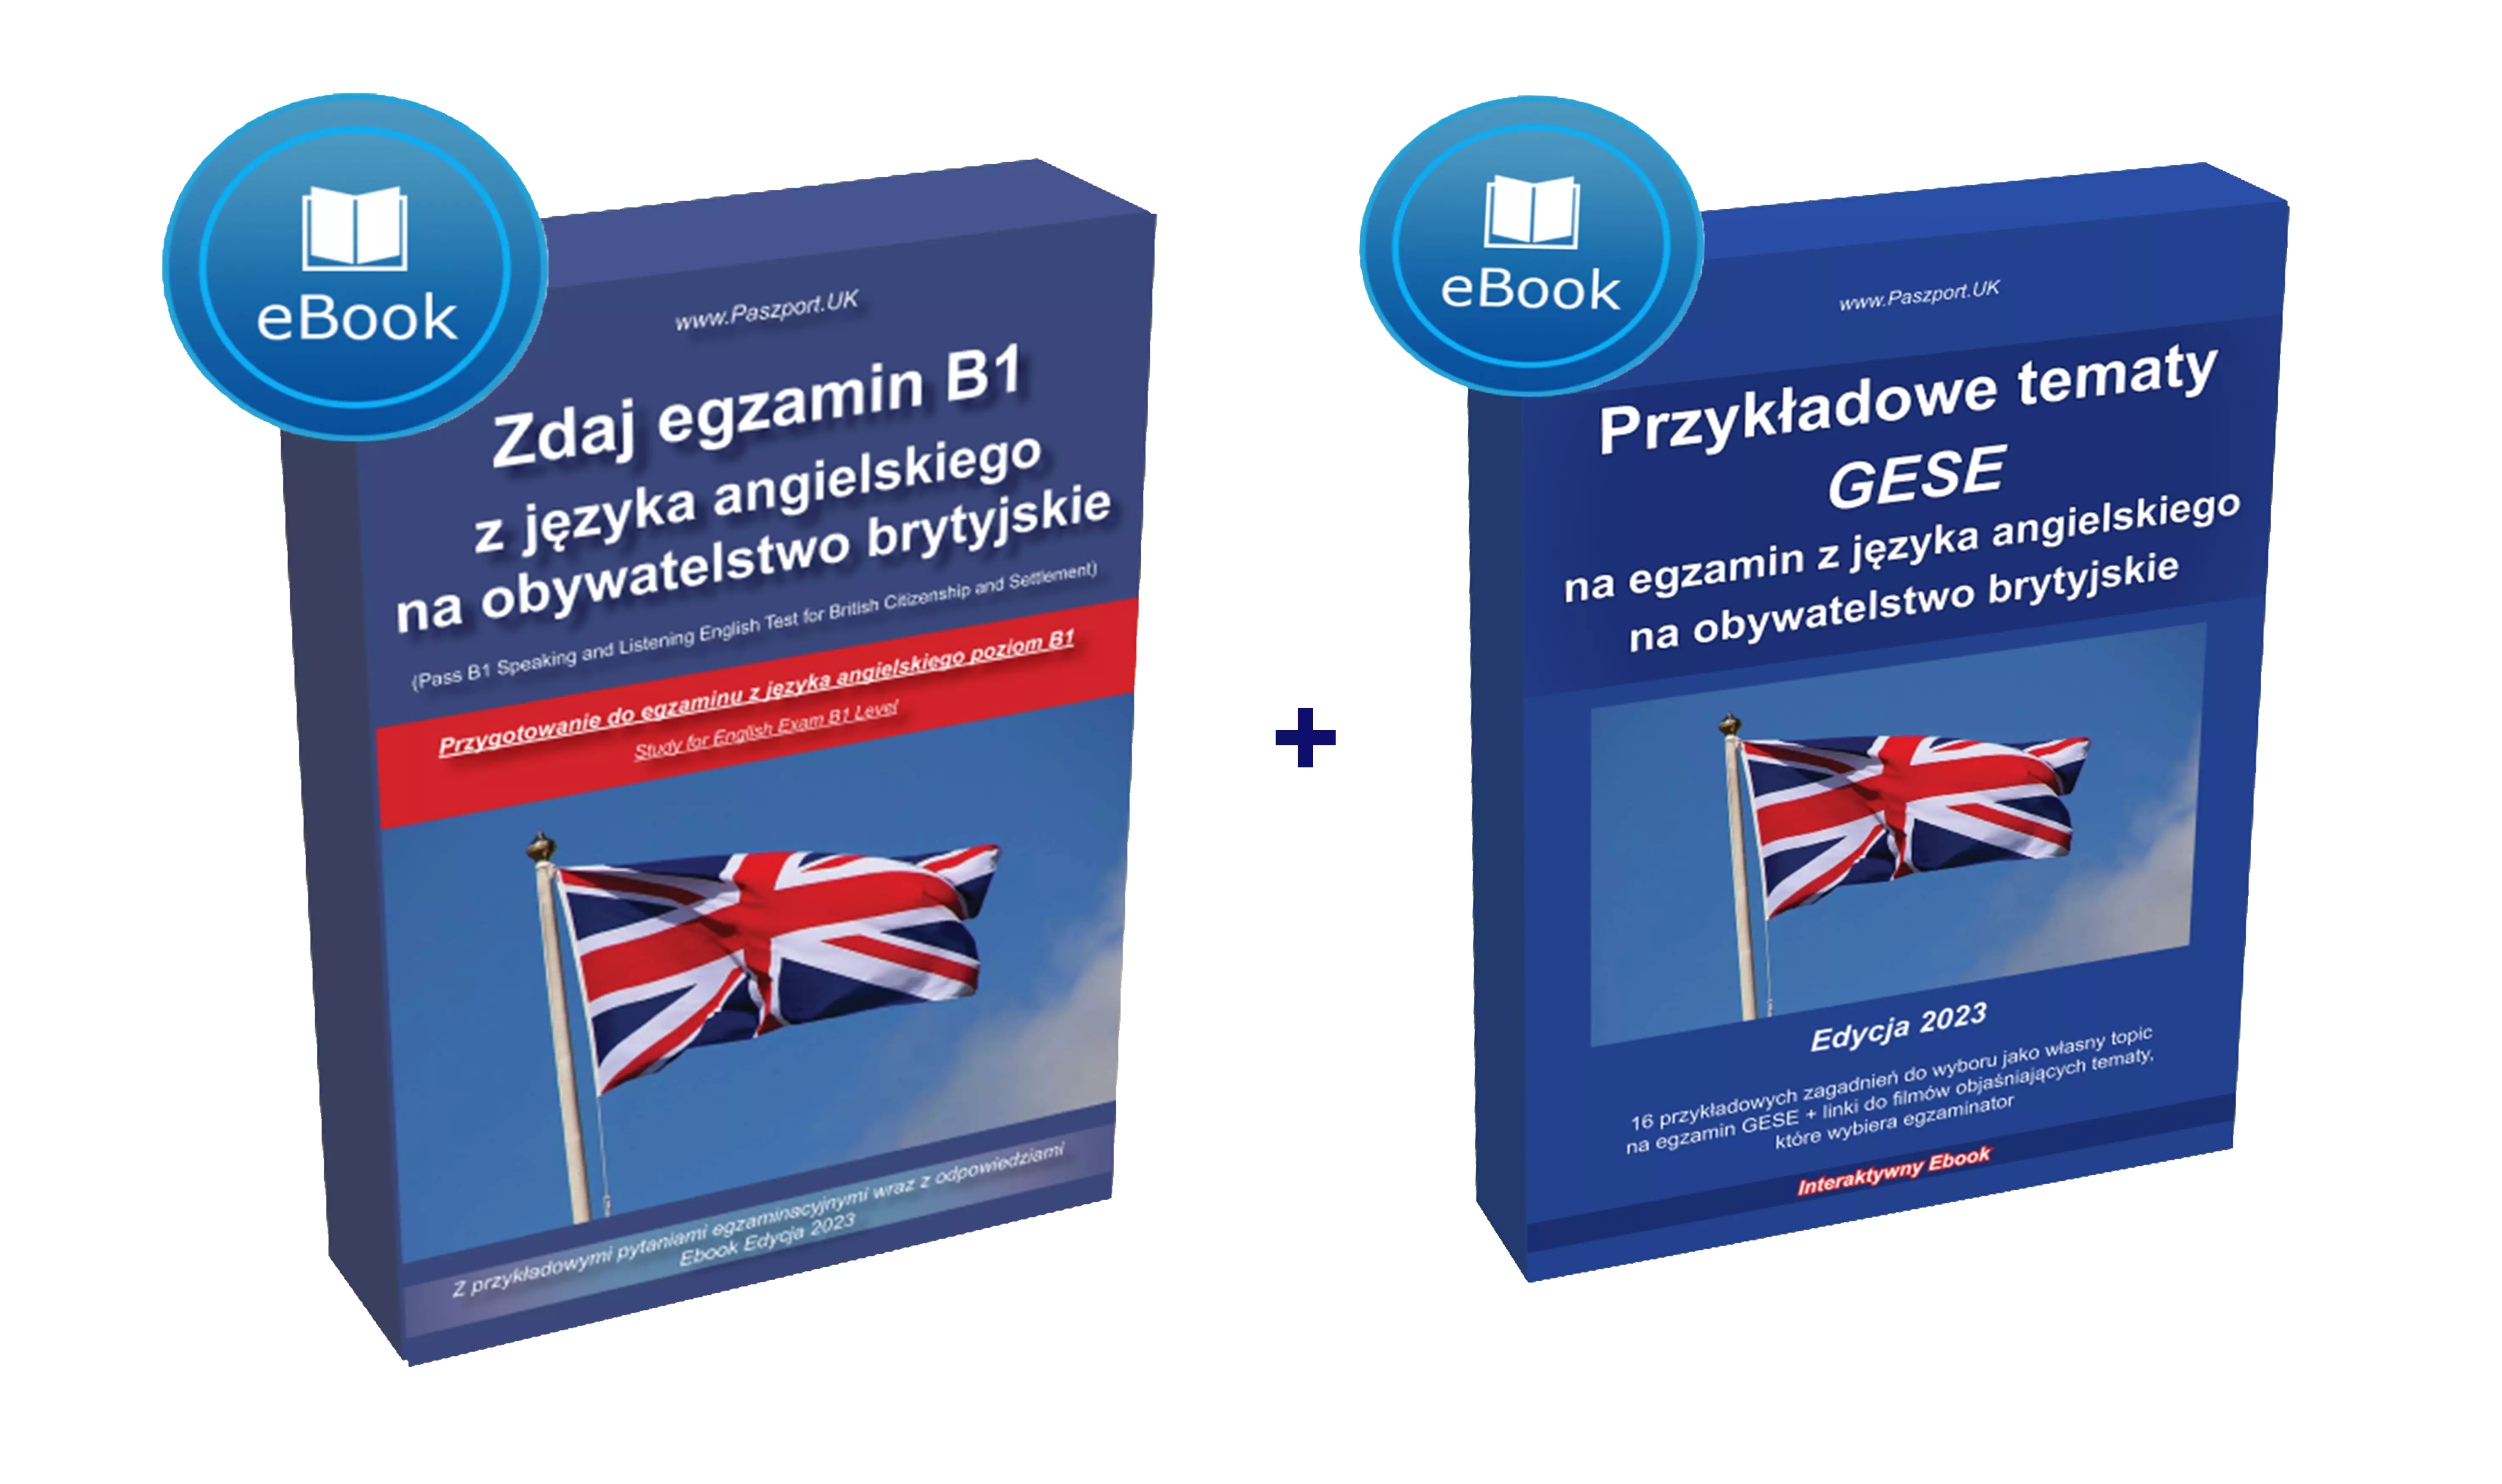 Dwujęzyczny Podręcznik Książka do egzaminu językowego z języka angielskiego na obywatelstwo brytyjskie w UK, czy egzamin językowy jest trudny, w jakim stopniu trzeba znać język B1 Selt Gese in Polish po polsku angielsku book app